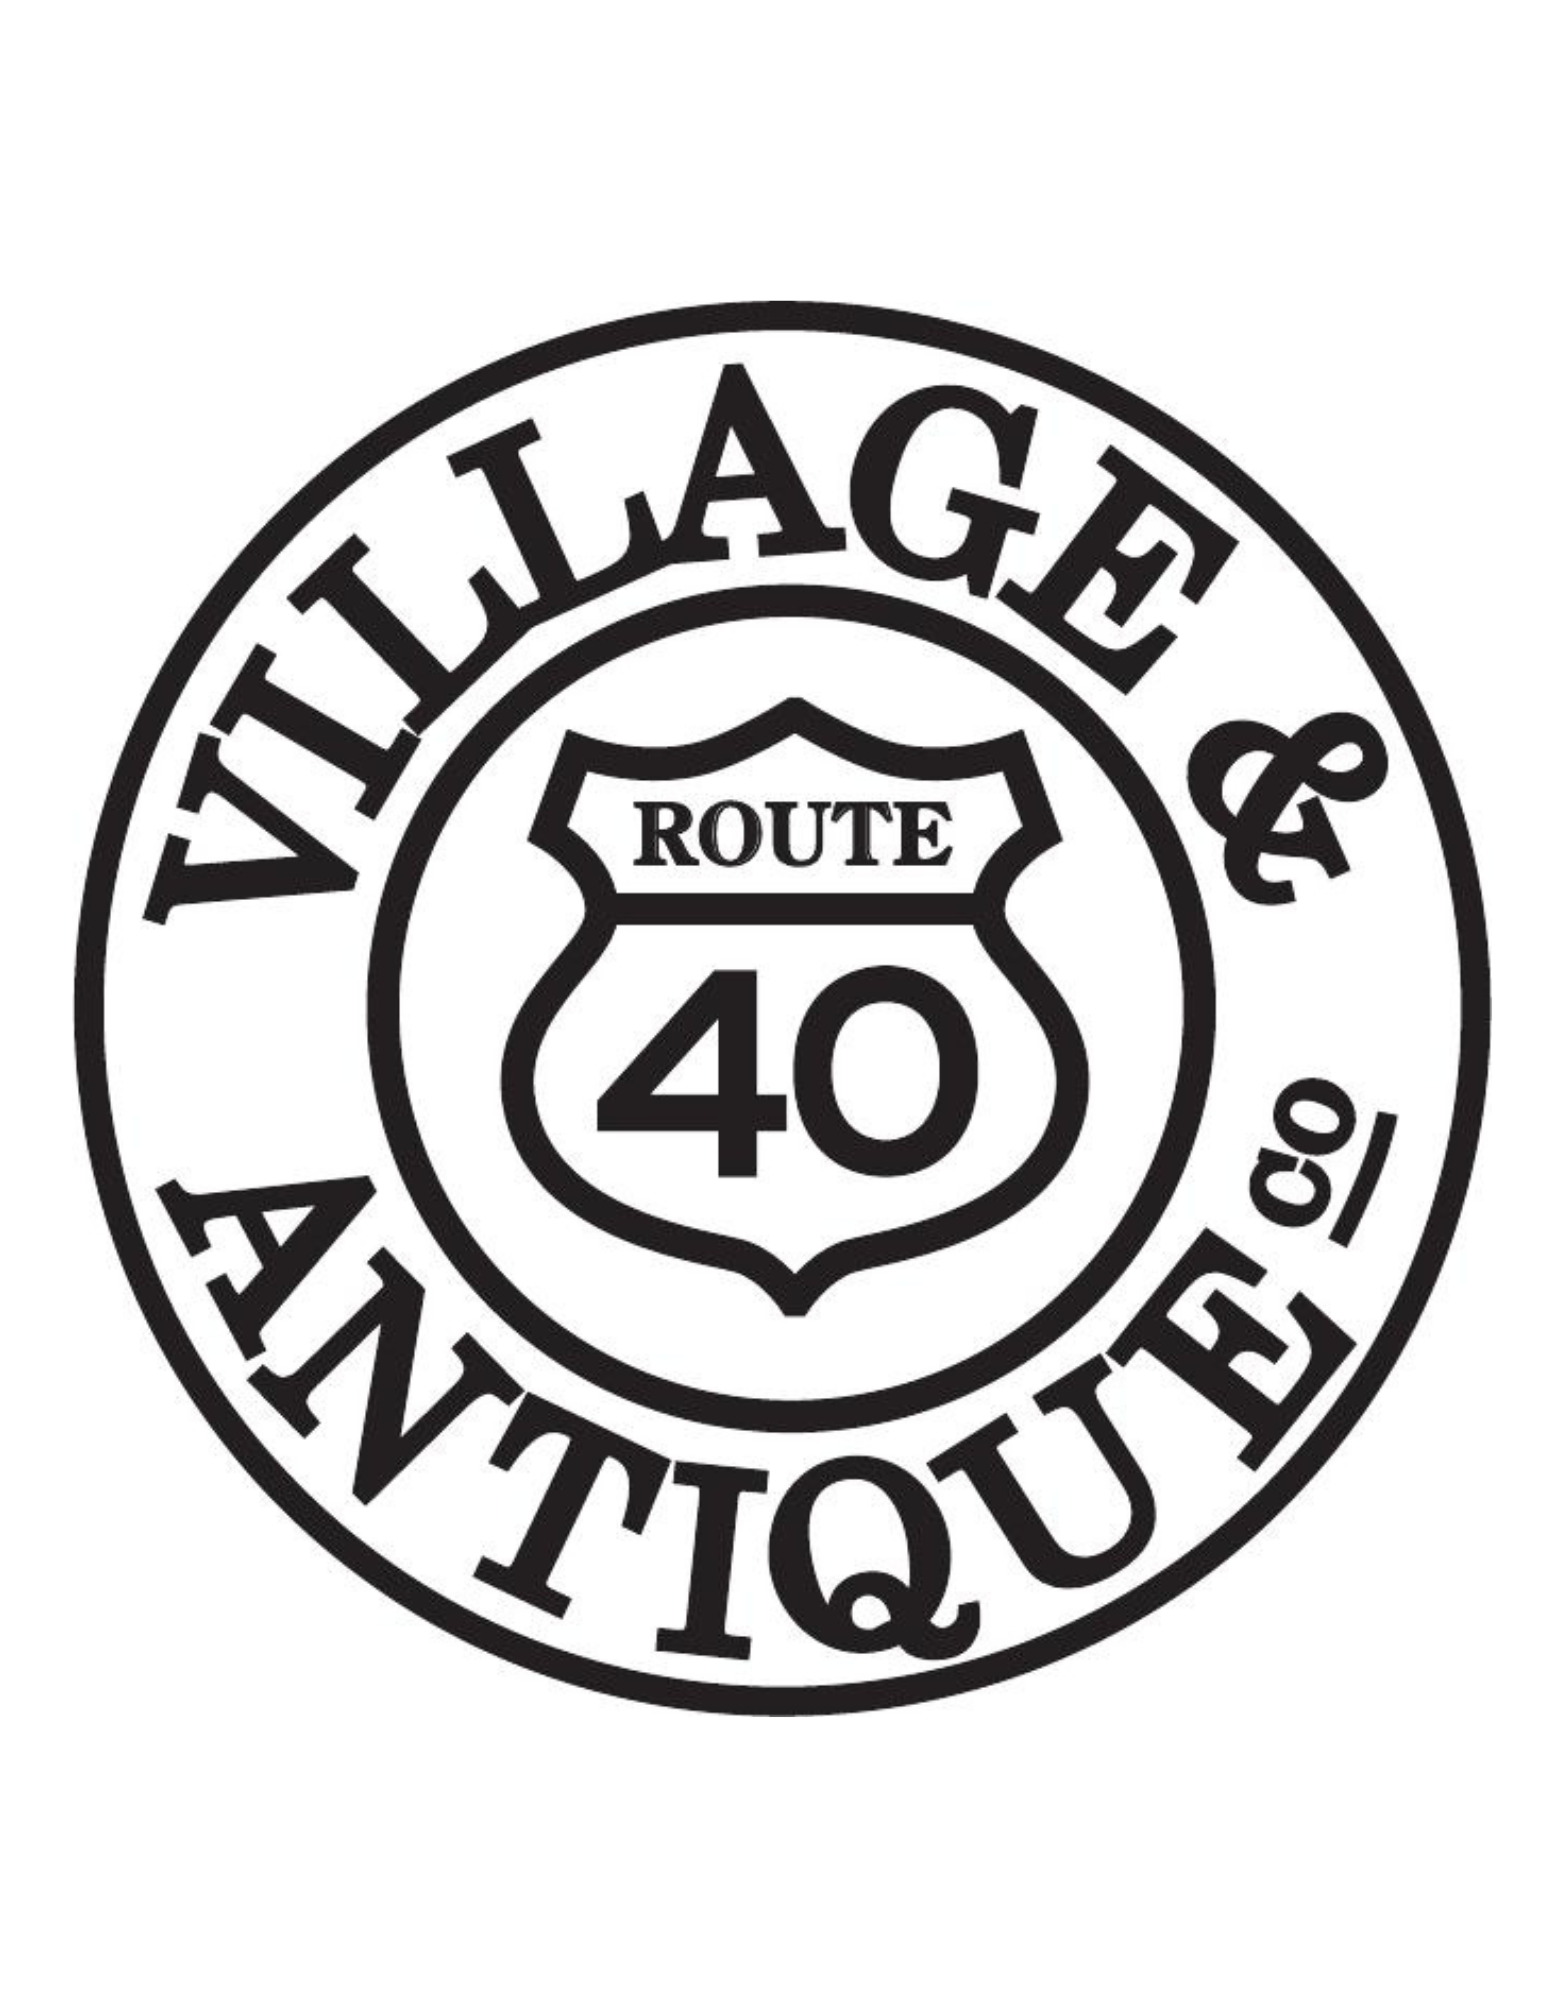 Route 40 Village & Antique Co.